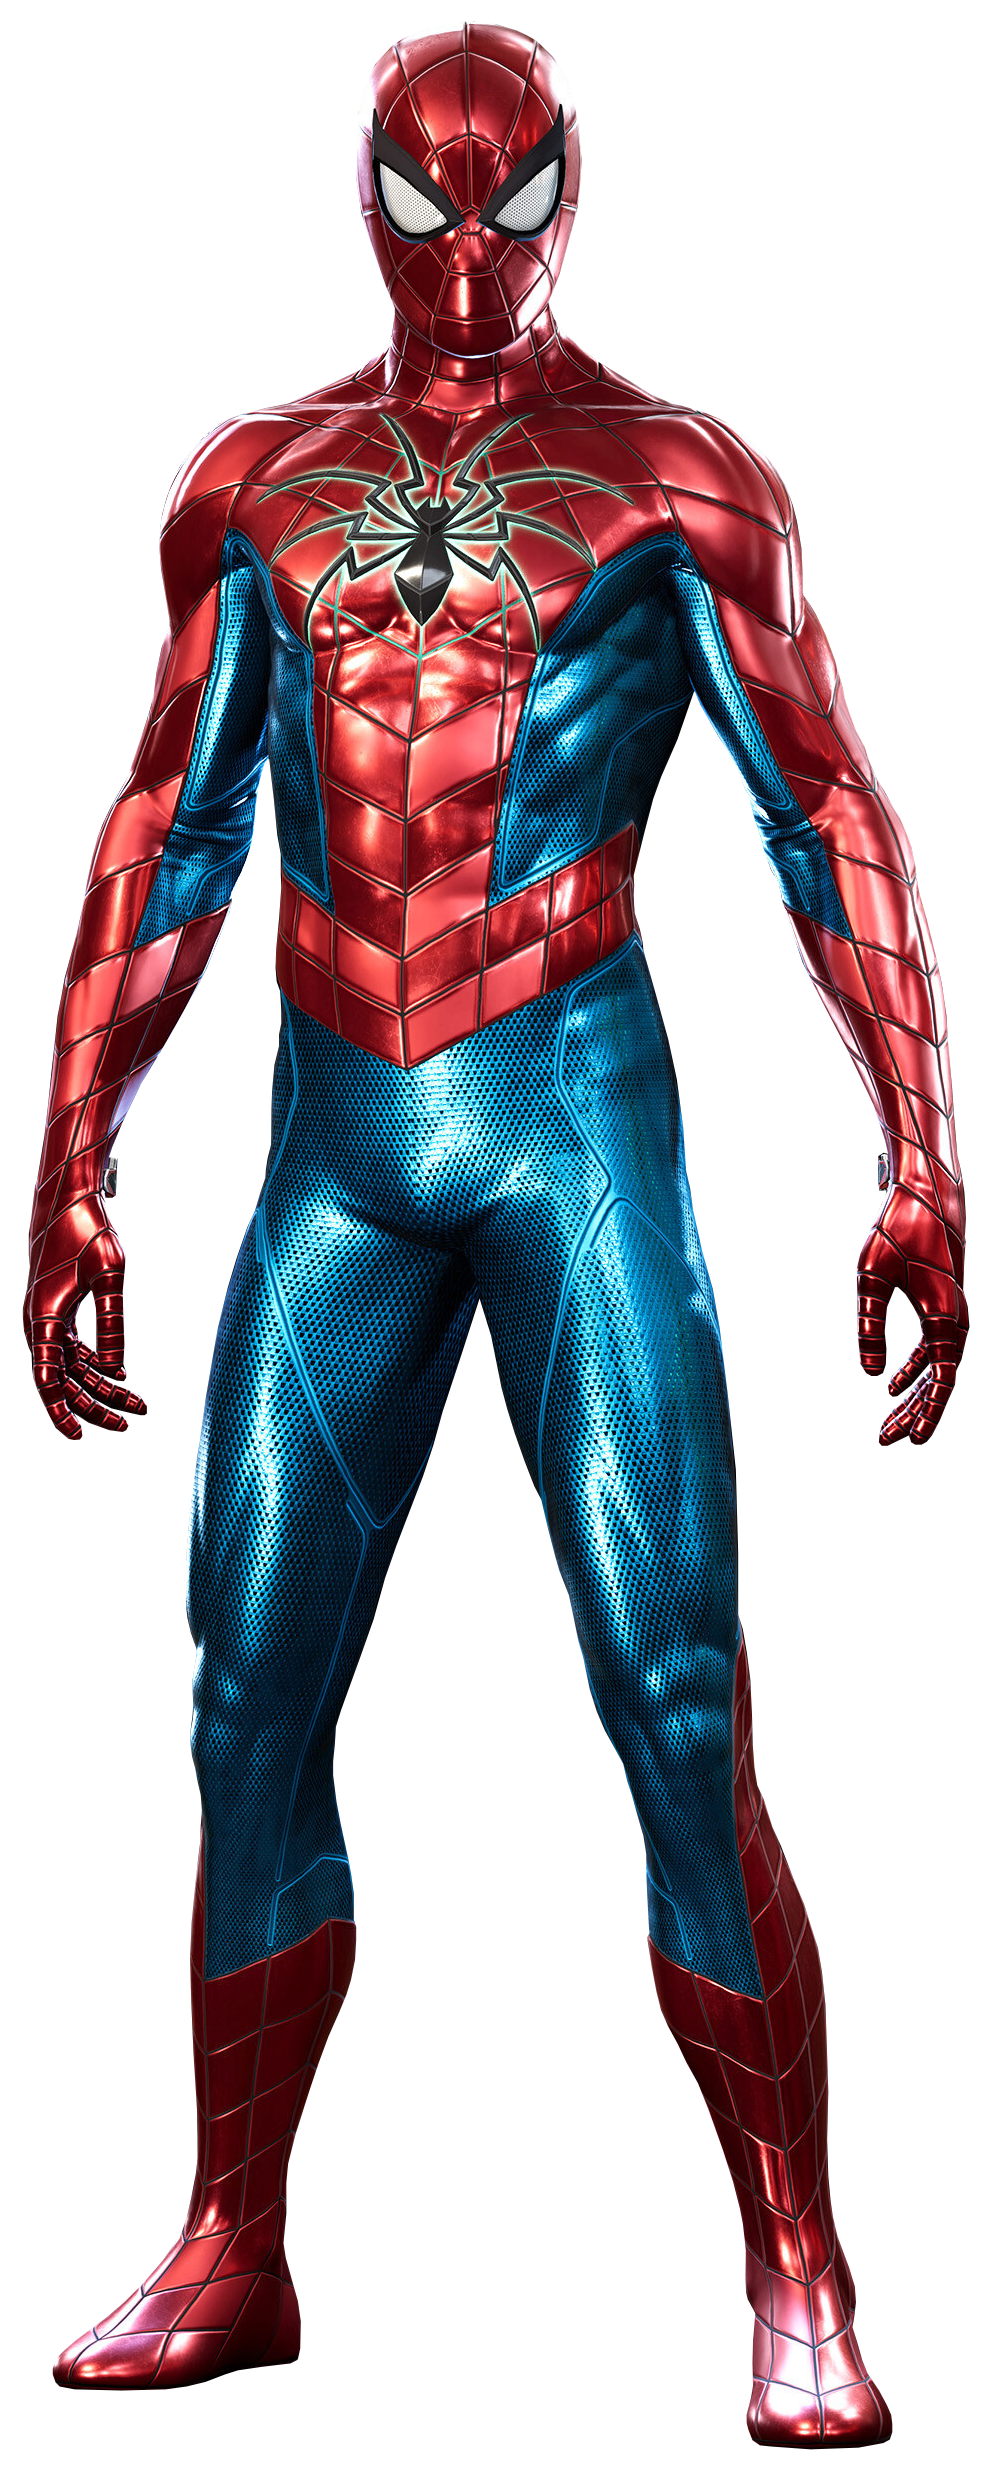 Spider Armor - MK IV Suit | Marvel's Spider-Man Wiki | Fandom